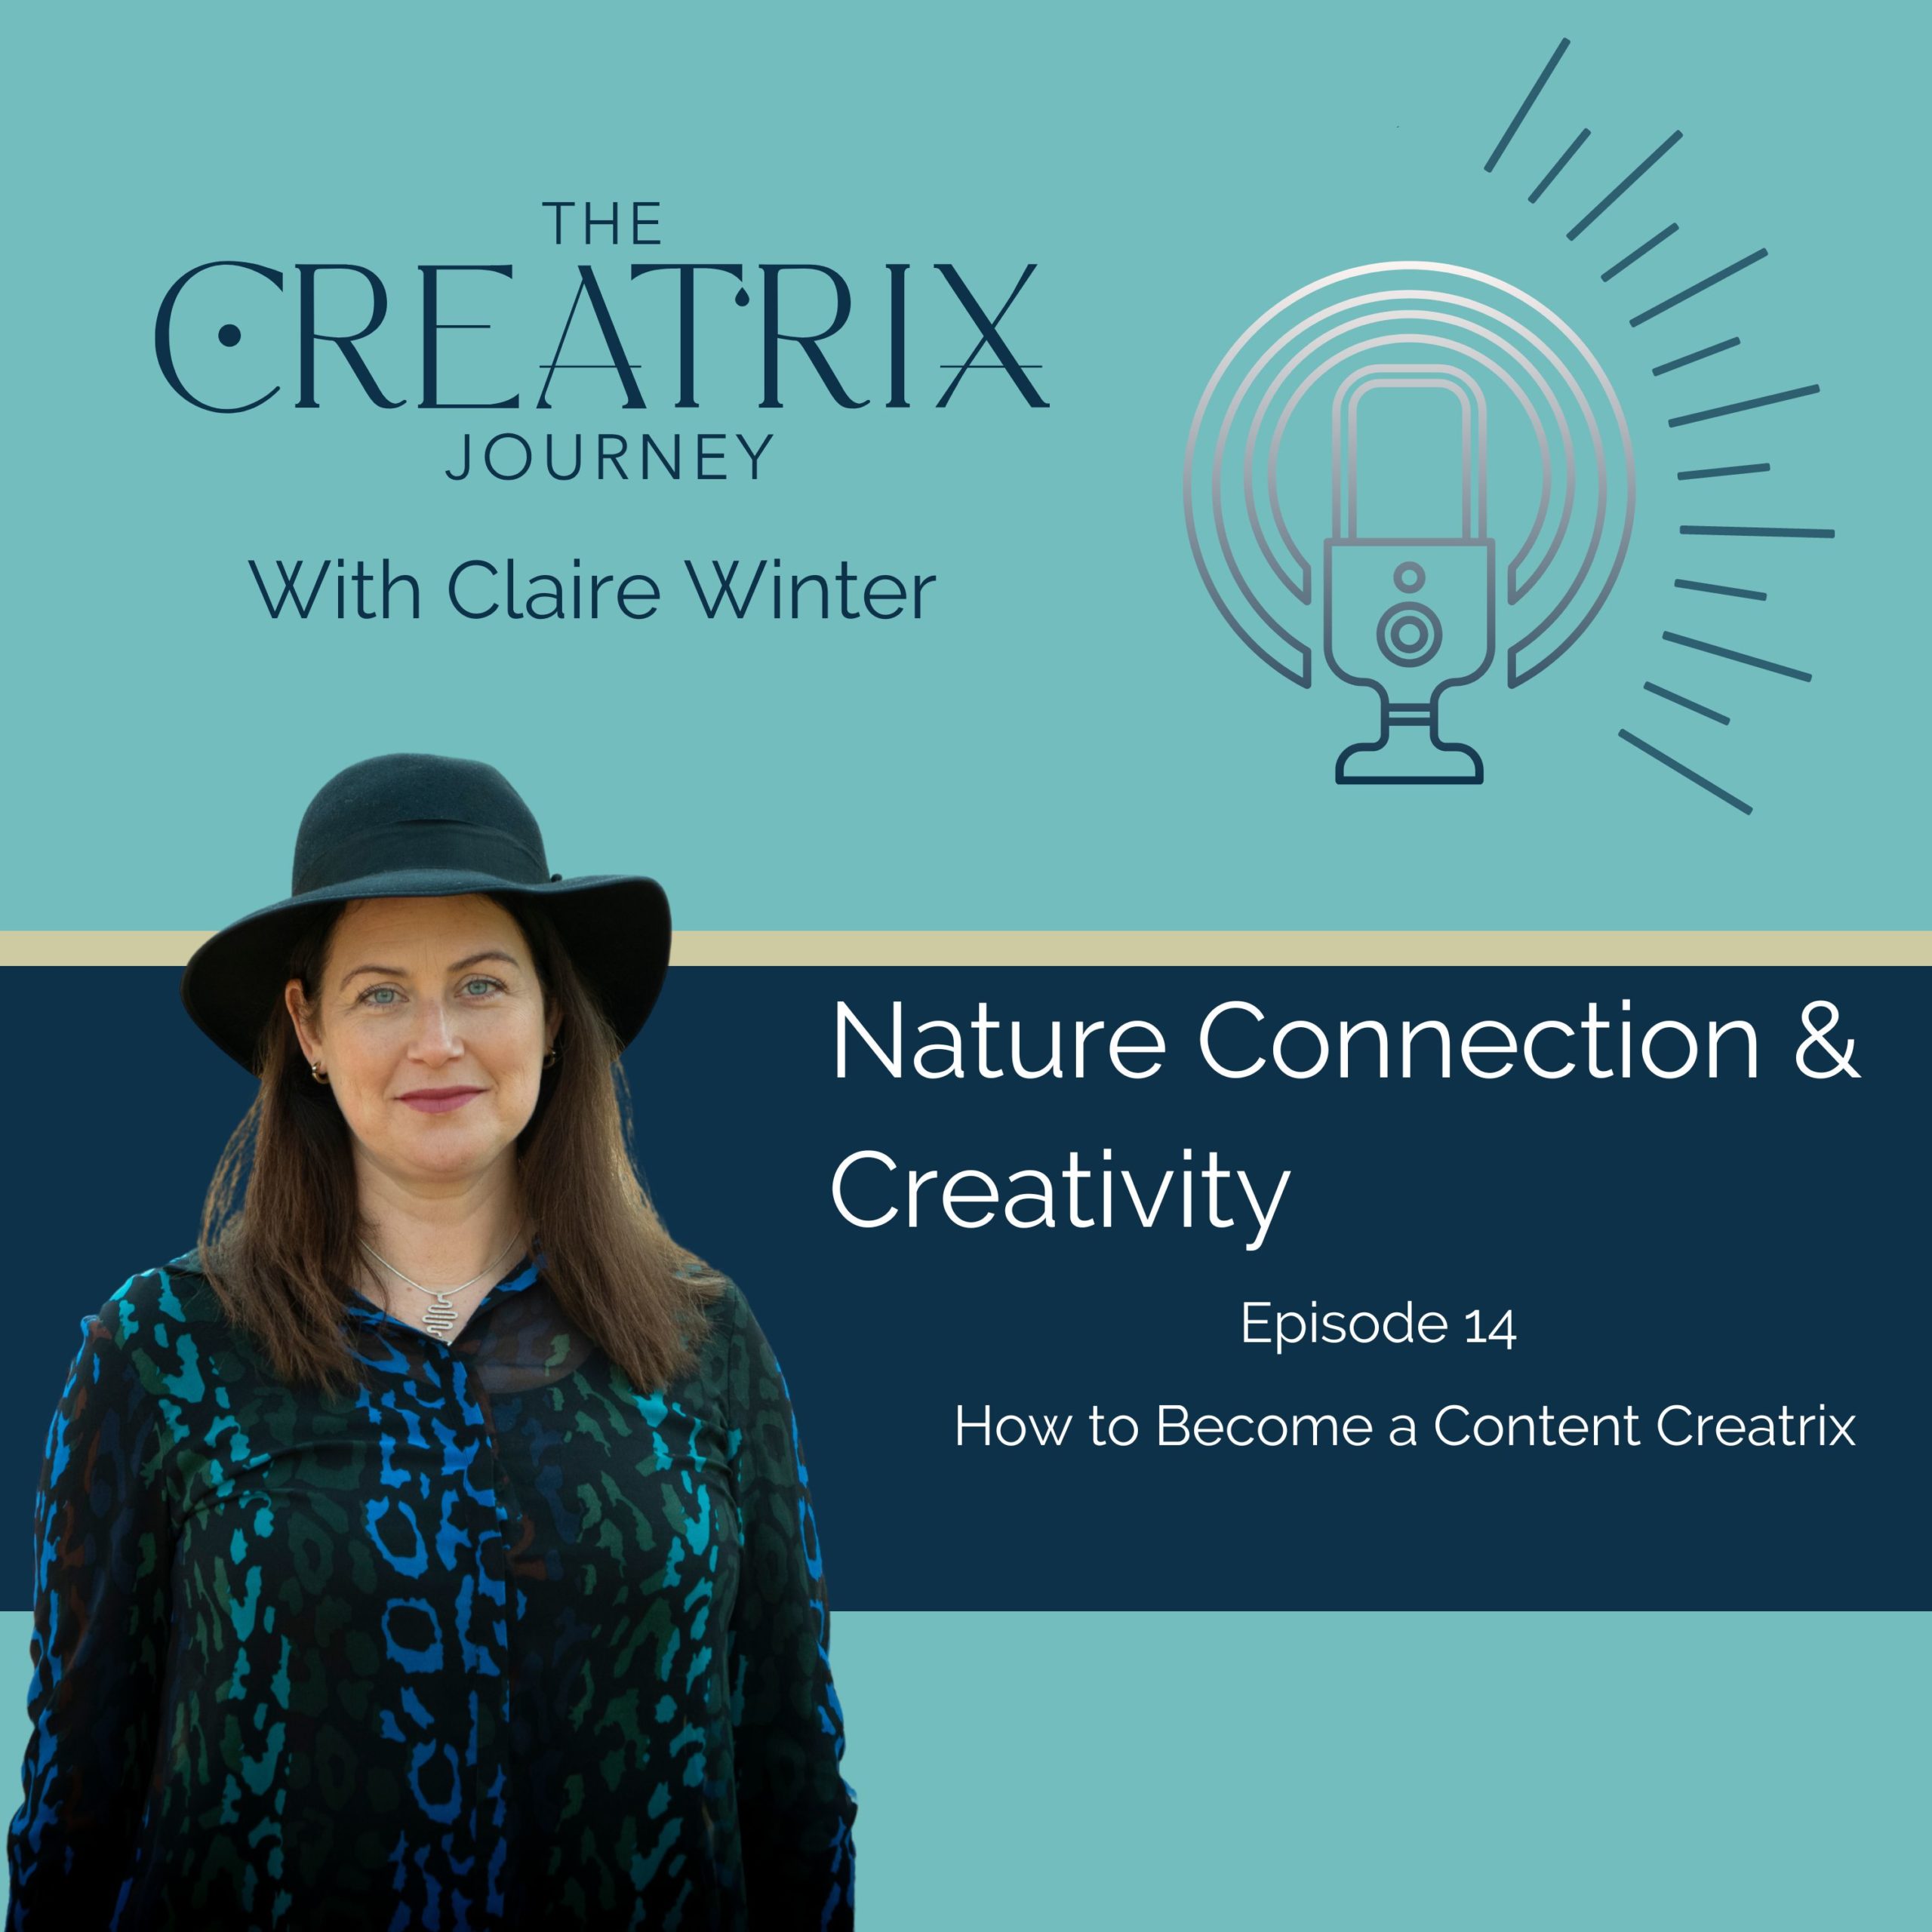 The Creatrix Journey Podcast